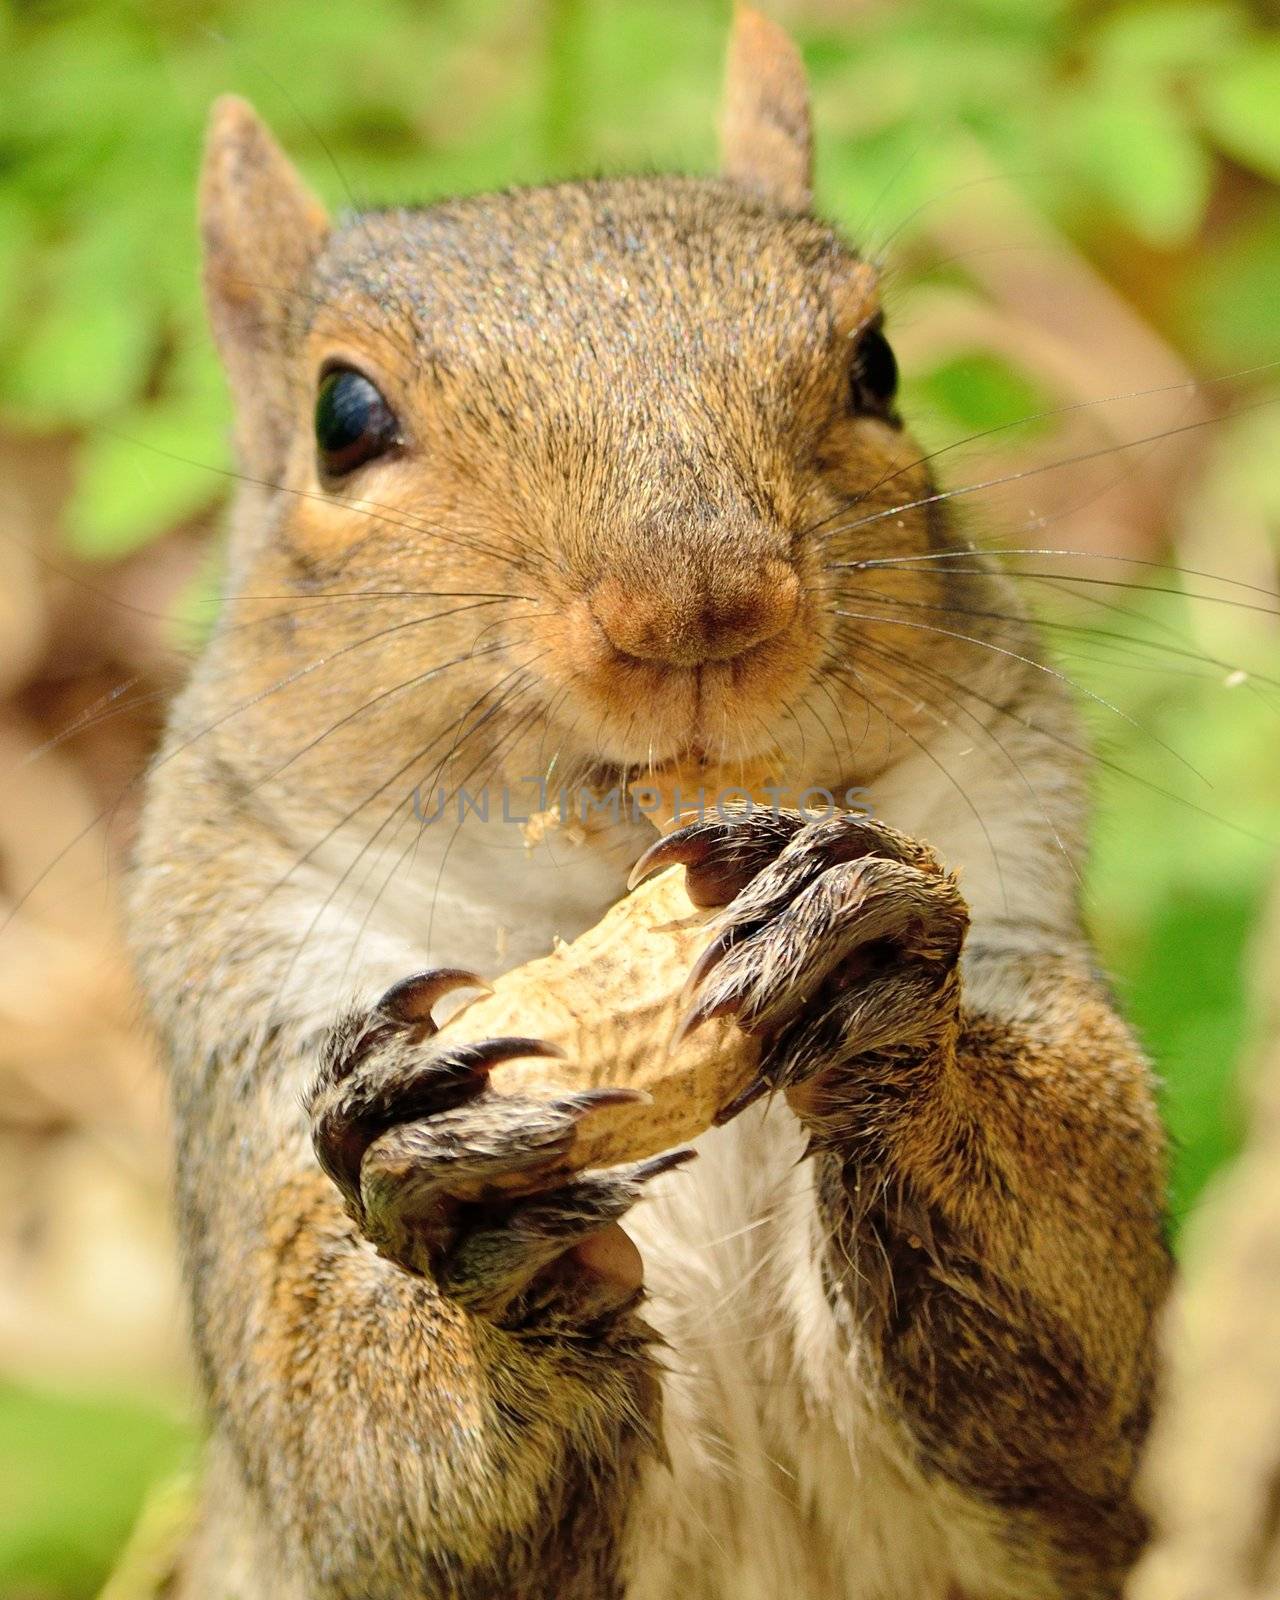 A Gray Squirrel closeup eating a peanut.